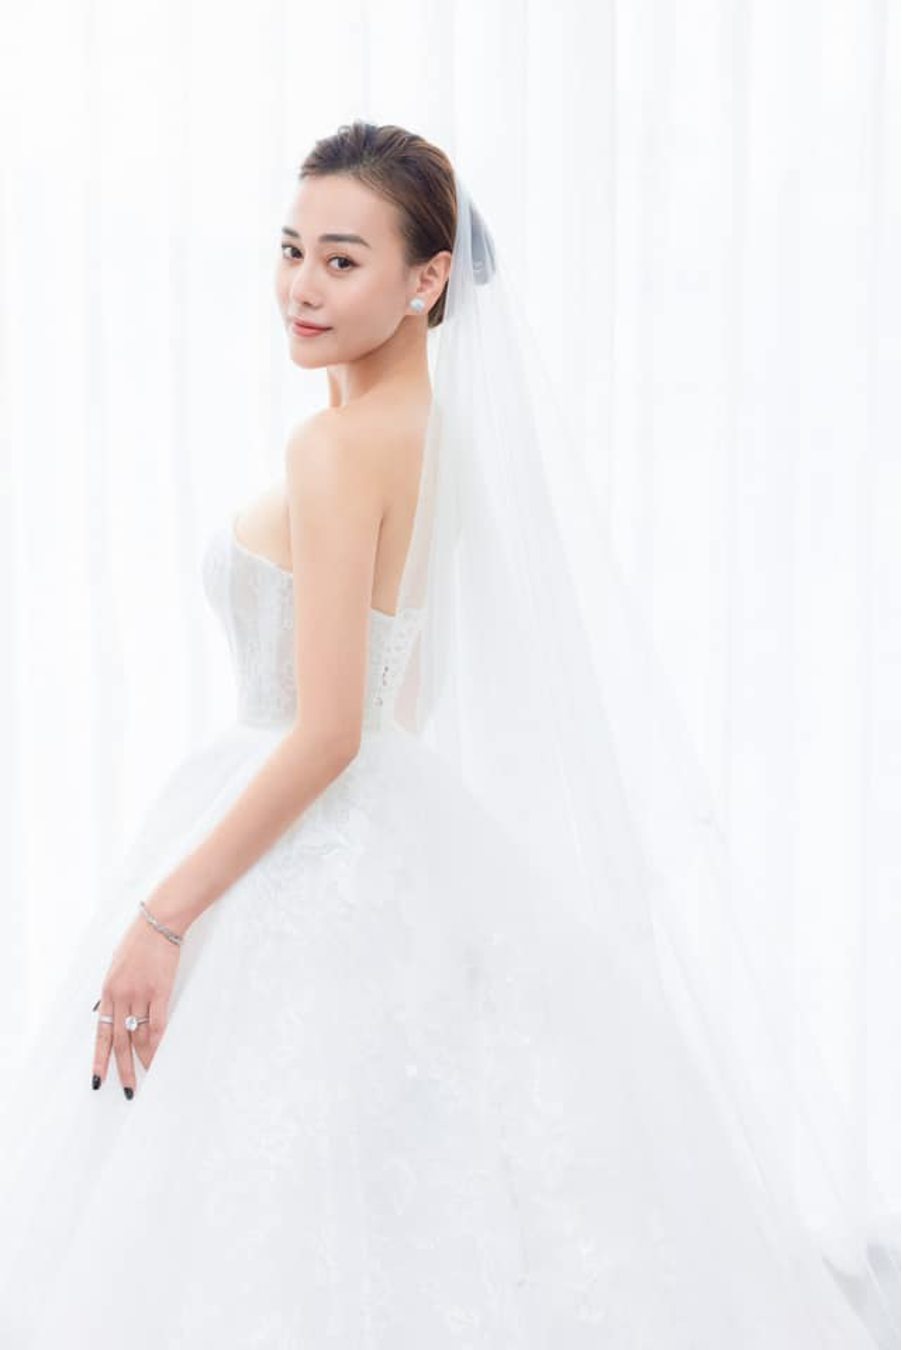 Giải trí - Phương Oanh gây sốt khi tung ảnh diện váy cô dâu trước ngày đám cưới (Hình 2).